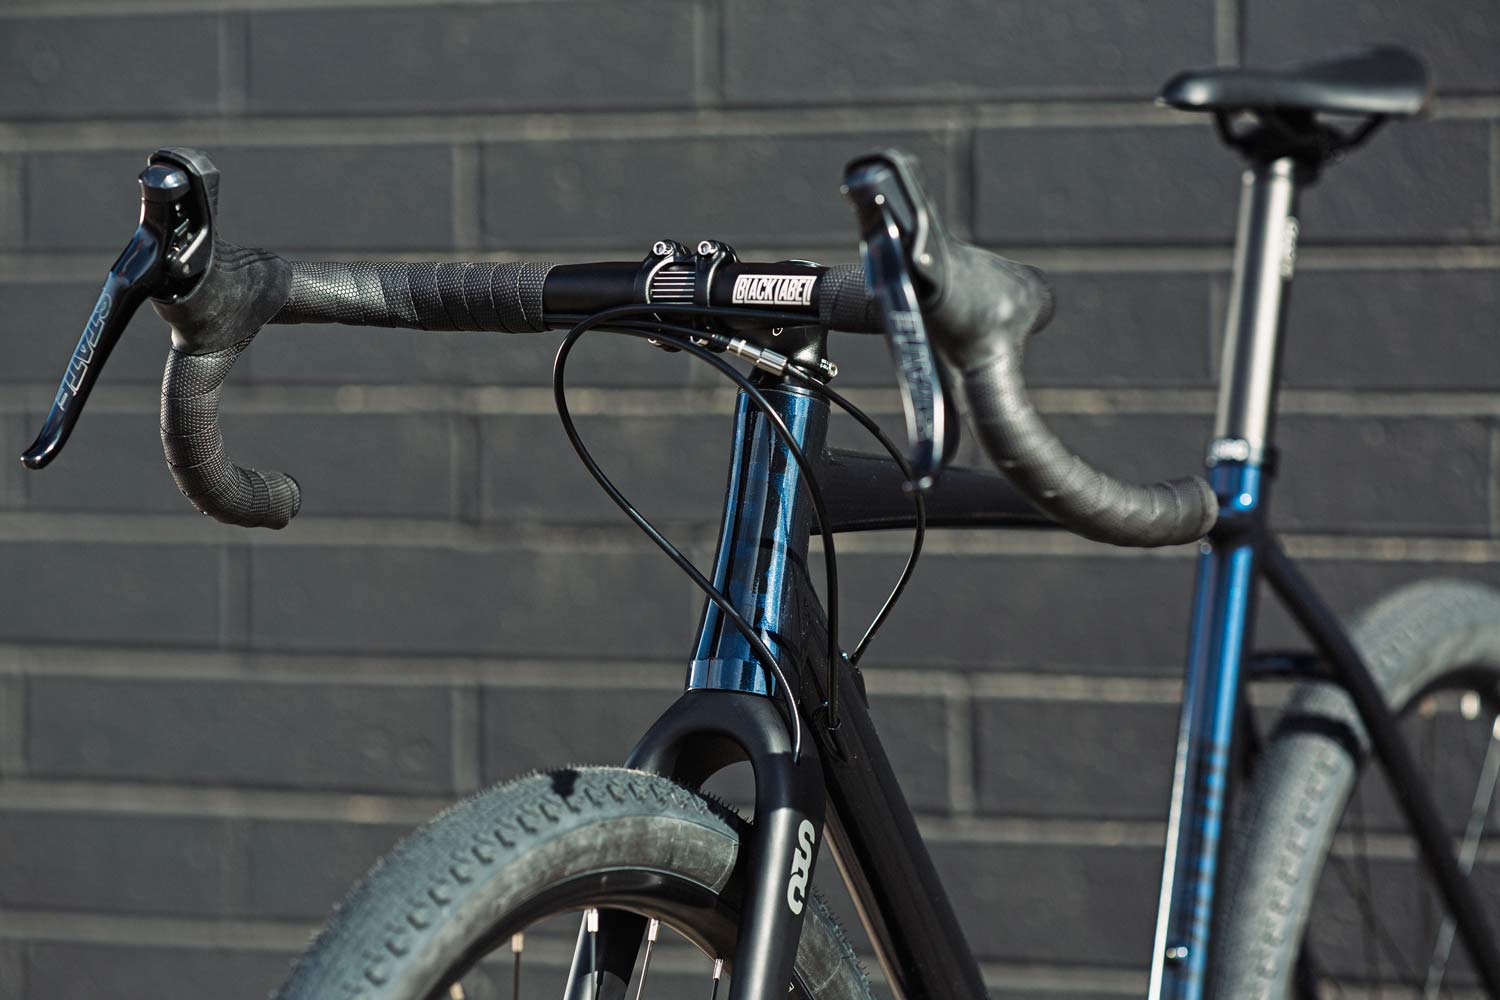 2021 State 6061 Black Label All-Road affordable alloy gravel bike updates, blue front end